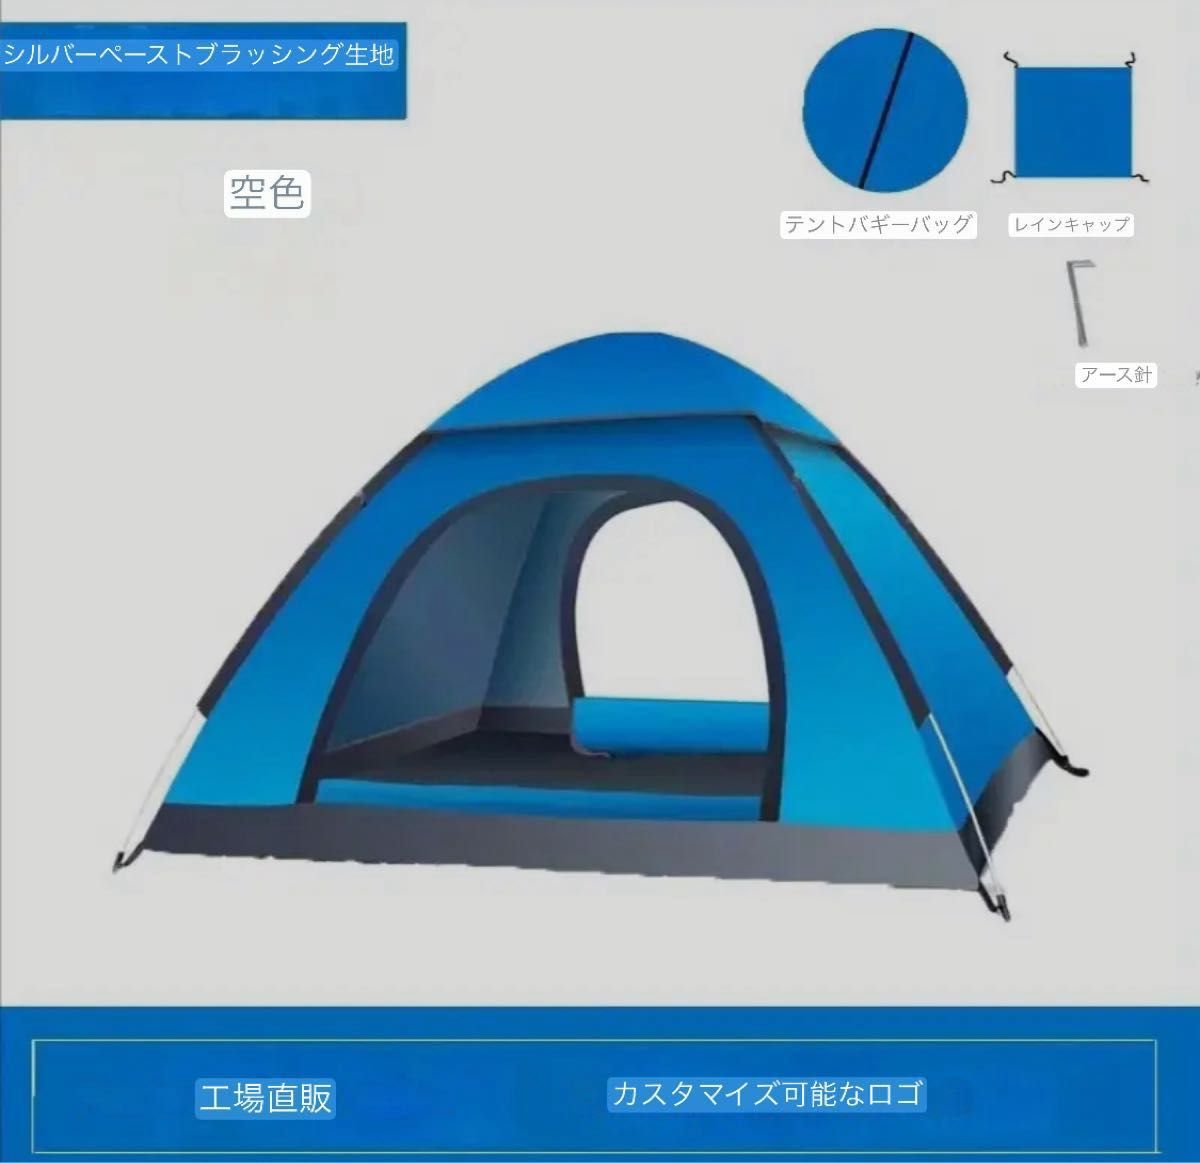 テント キャンプテント 3-4人用 両開き 防水 屋外 ビーチ レイクブルー アウトドア 日よけ 運動会 折りたたみテント